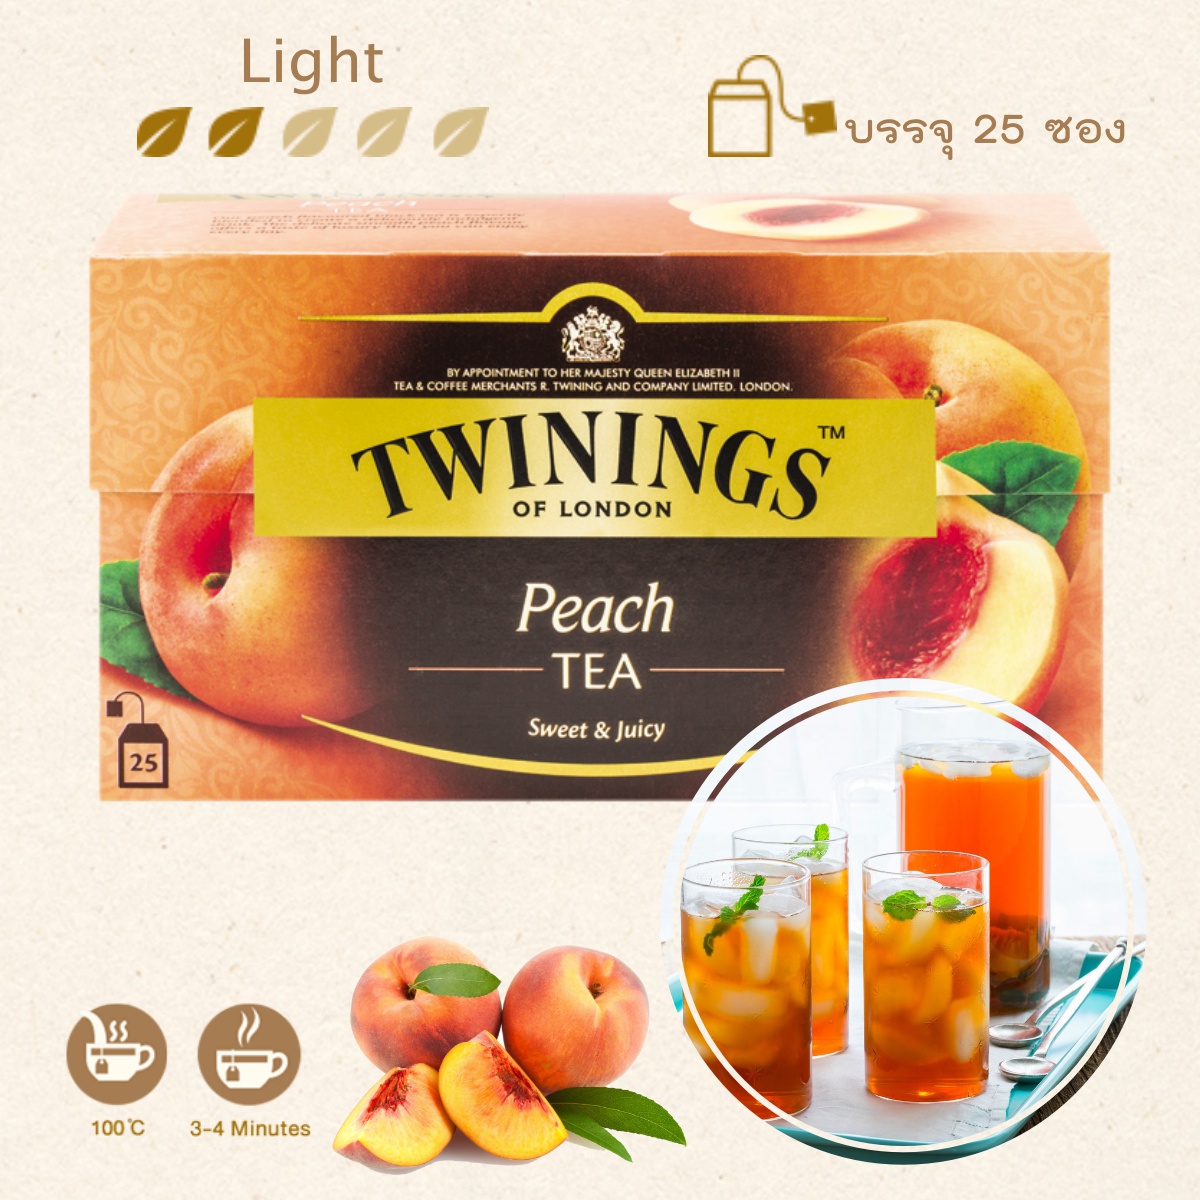 ชา ทไวนิงส์ พีช 1 กล่อง (2 กรัม x 25 ซอง) Twinings Peach Tea ชาพีช คาเฟอีนน้อย ชาดำ รสพีช กลิ่นหอมสดชื่น รสหอมหวาน สดชื่นทุกครั้งที่ดื่ม ชาทไวนิ่ง ชาอังกฤษแท้ 100% Flavoured Black Tea English Tea ชาเพื่อสุขภาพ ส่งด่วน